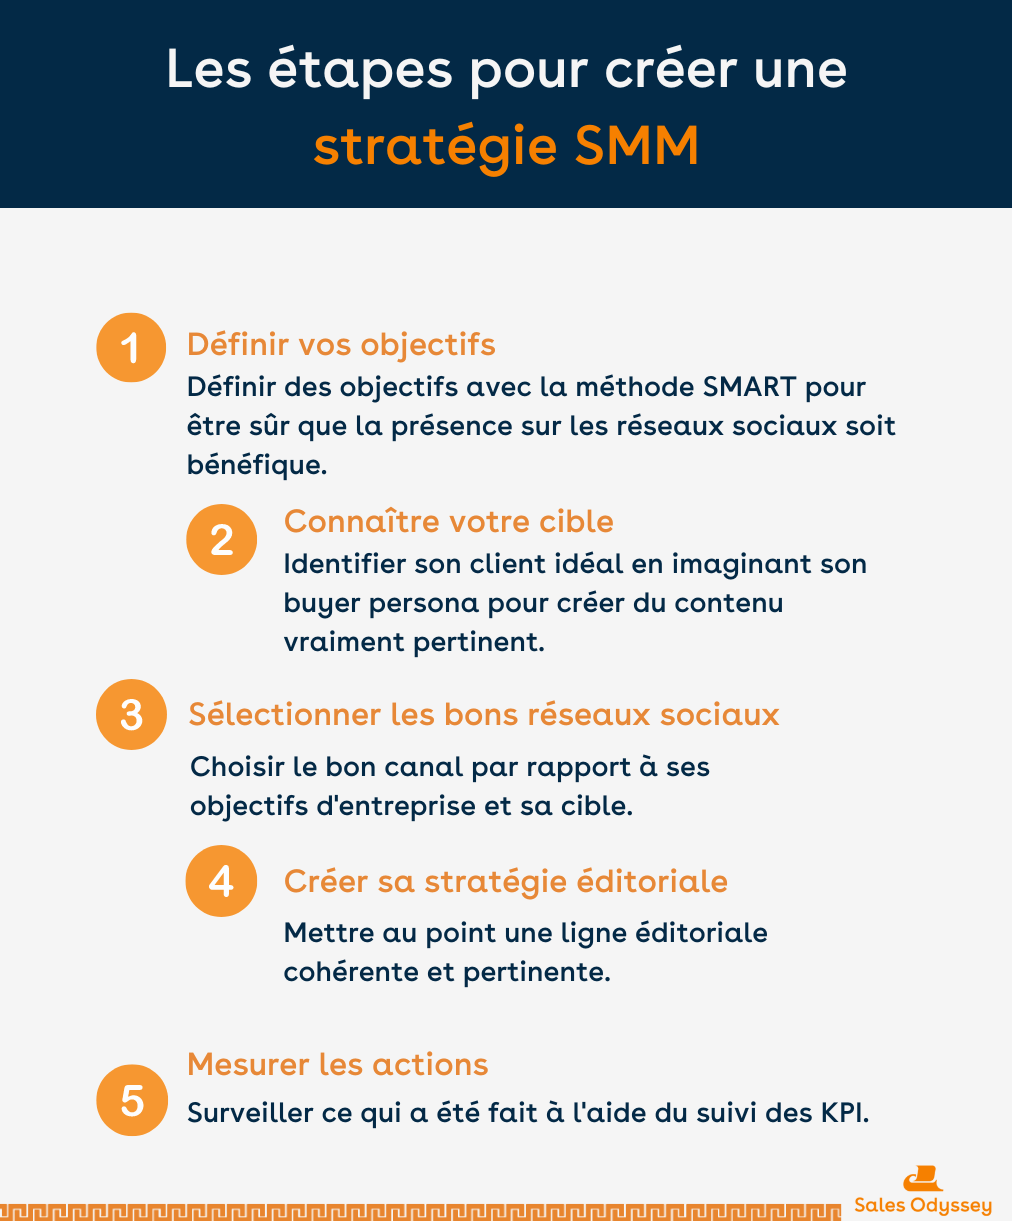 Les étapes pour créer une stratégie SMM